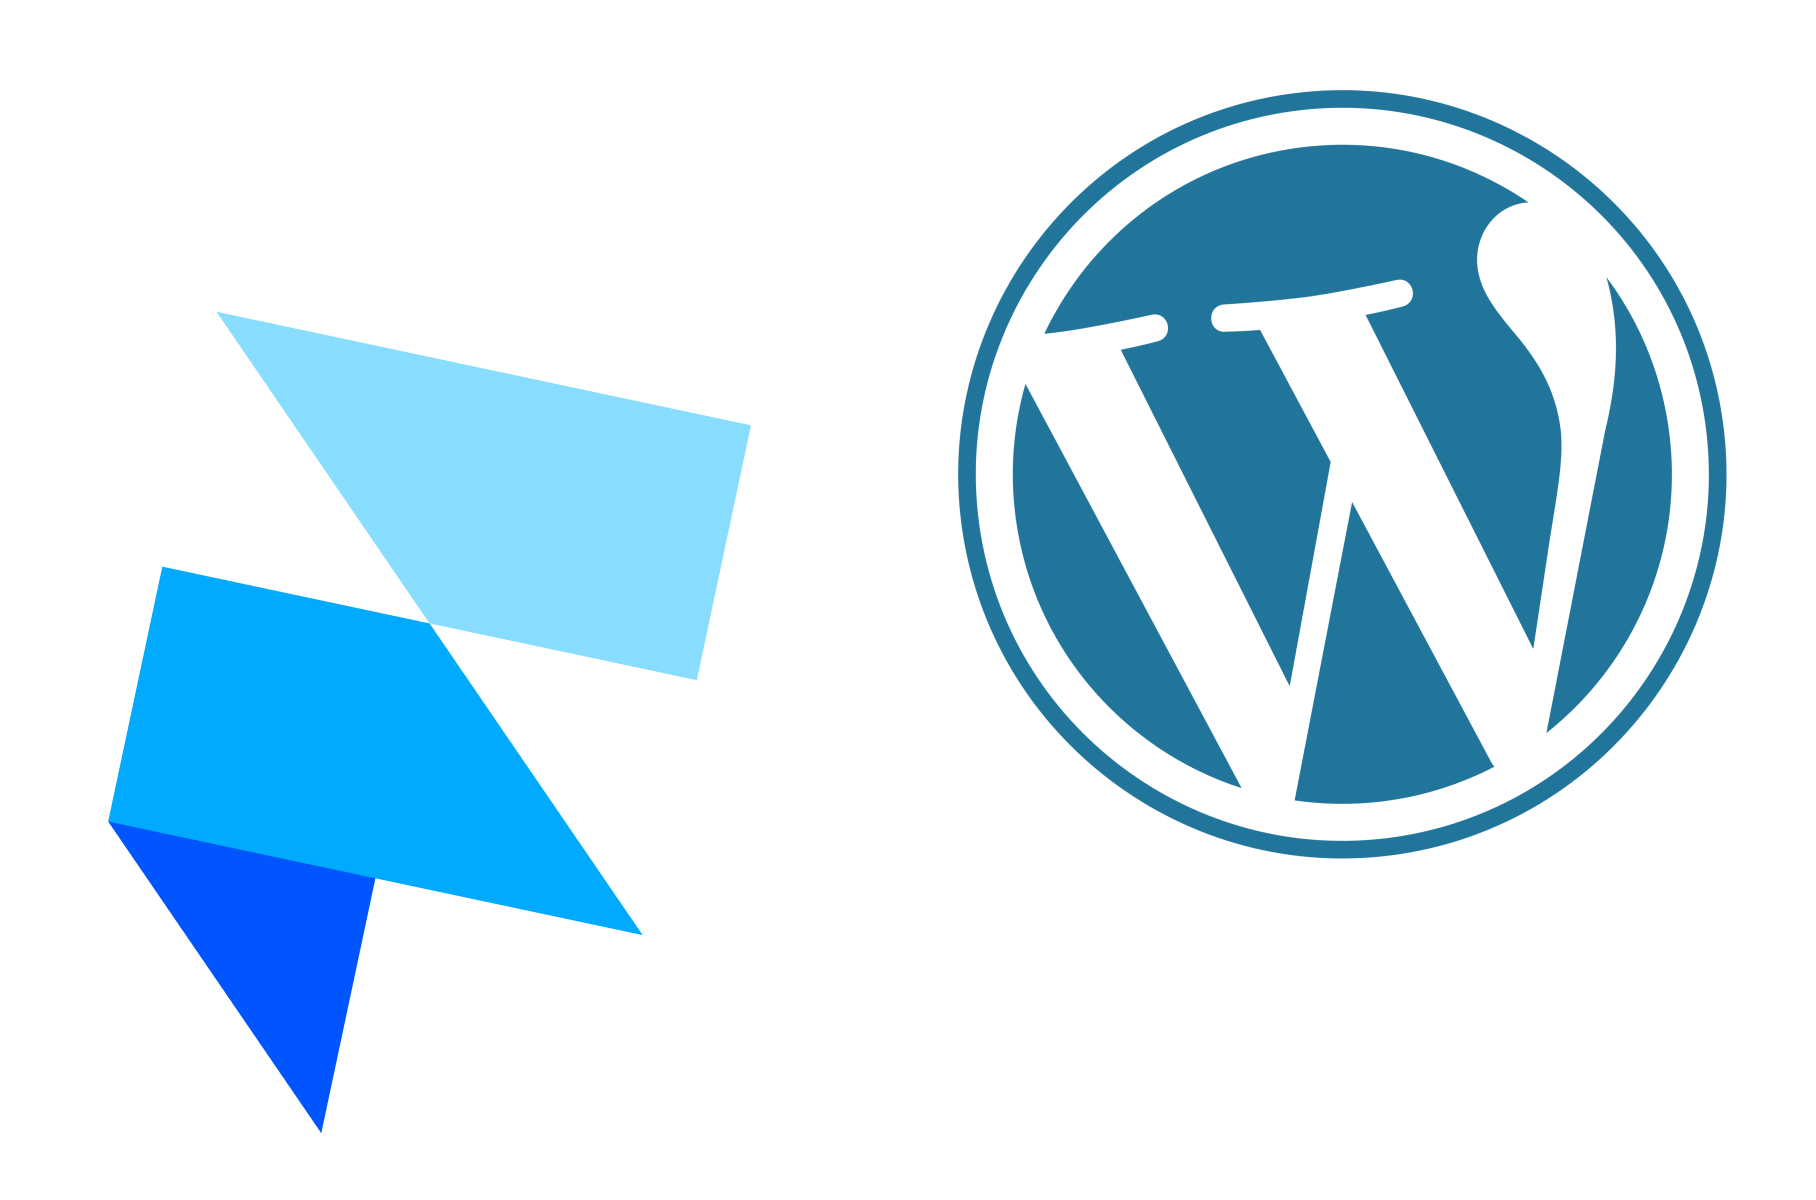 Framer VS WordPress